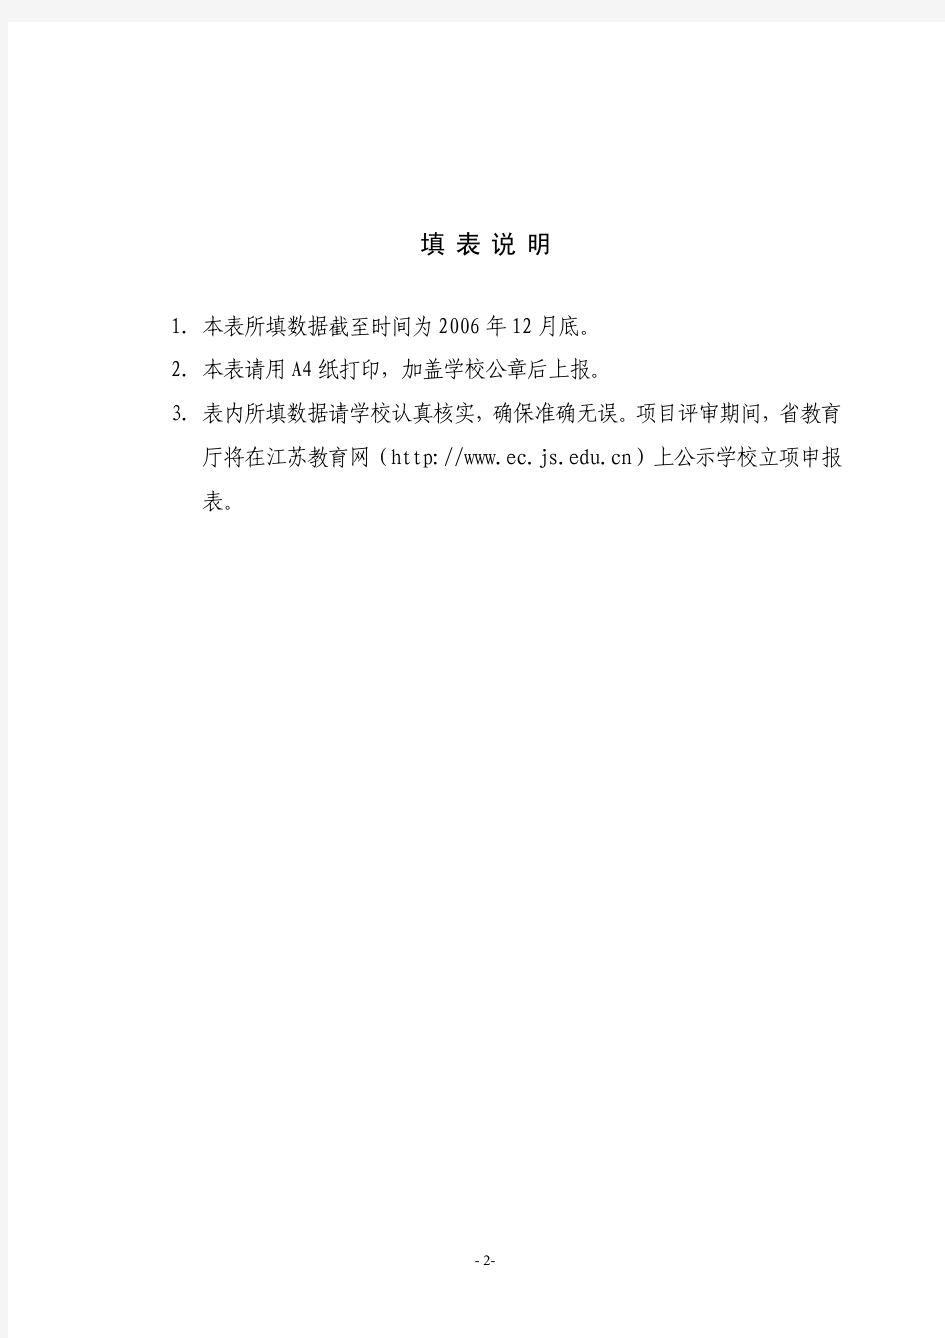 江苏省高等学校基础课实验教学示范中心 立项申报表